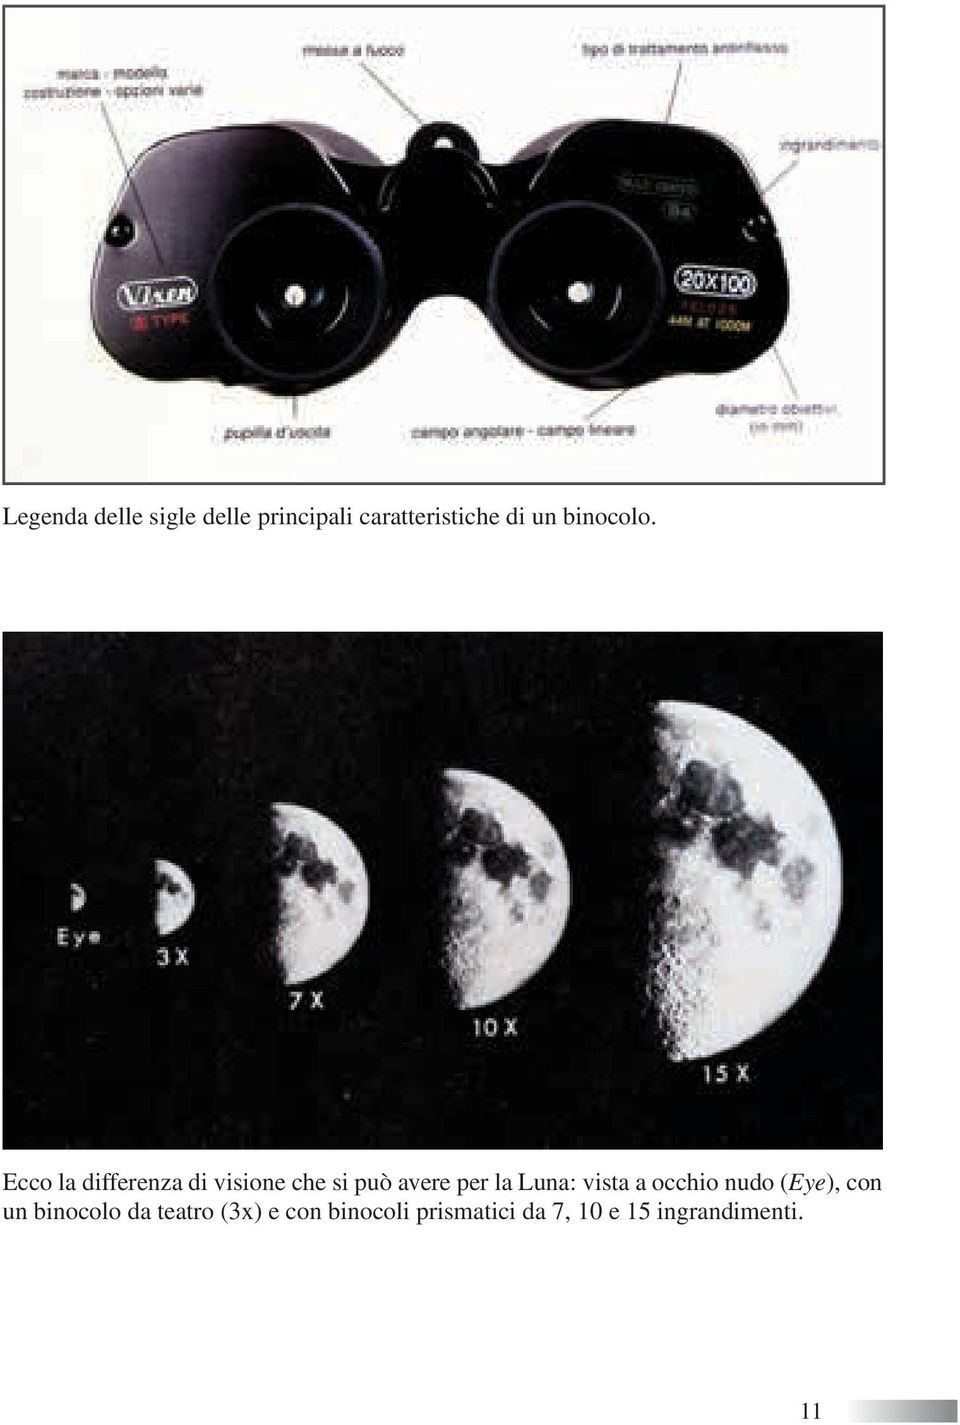 Ecco la differenza di visione che si può avere per la Luna: